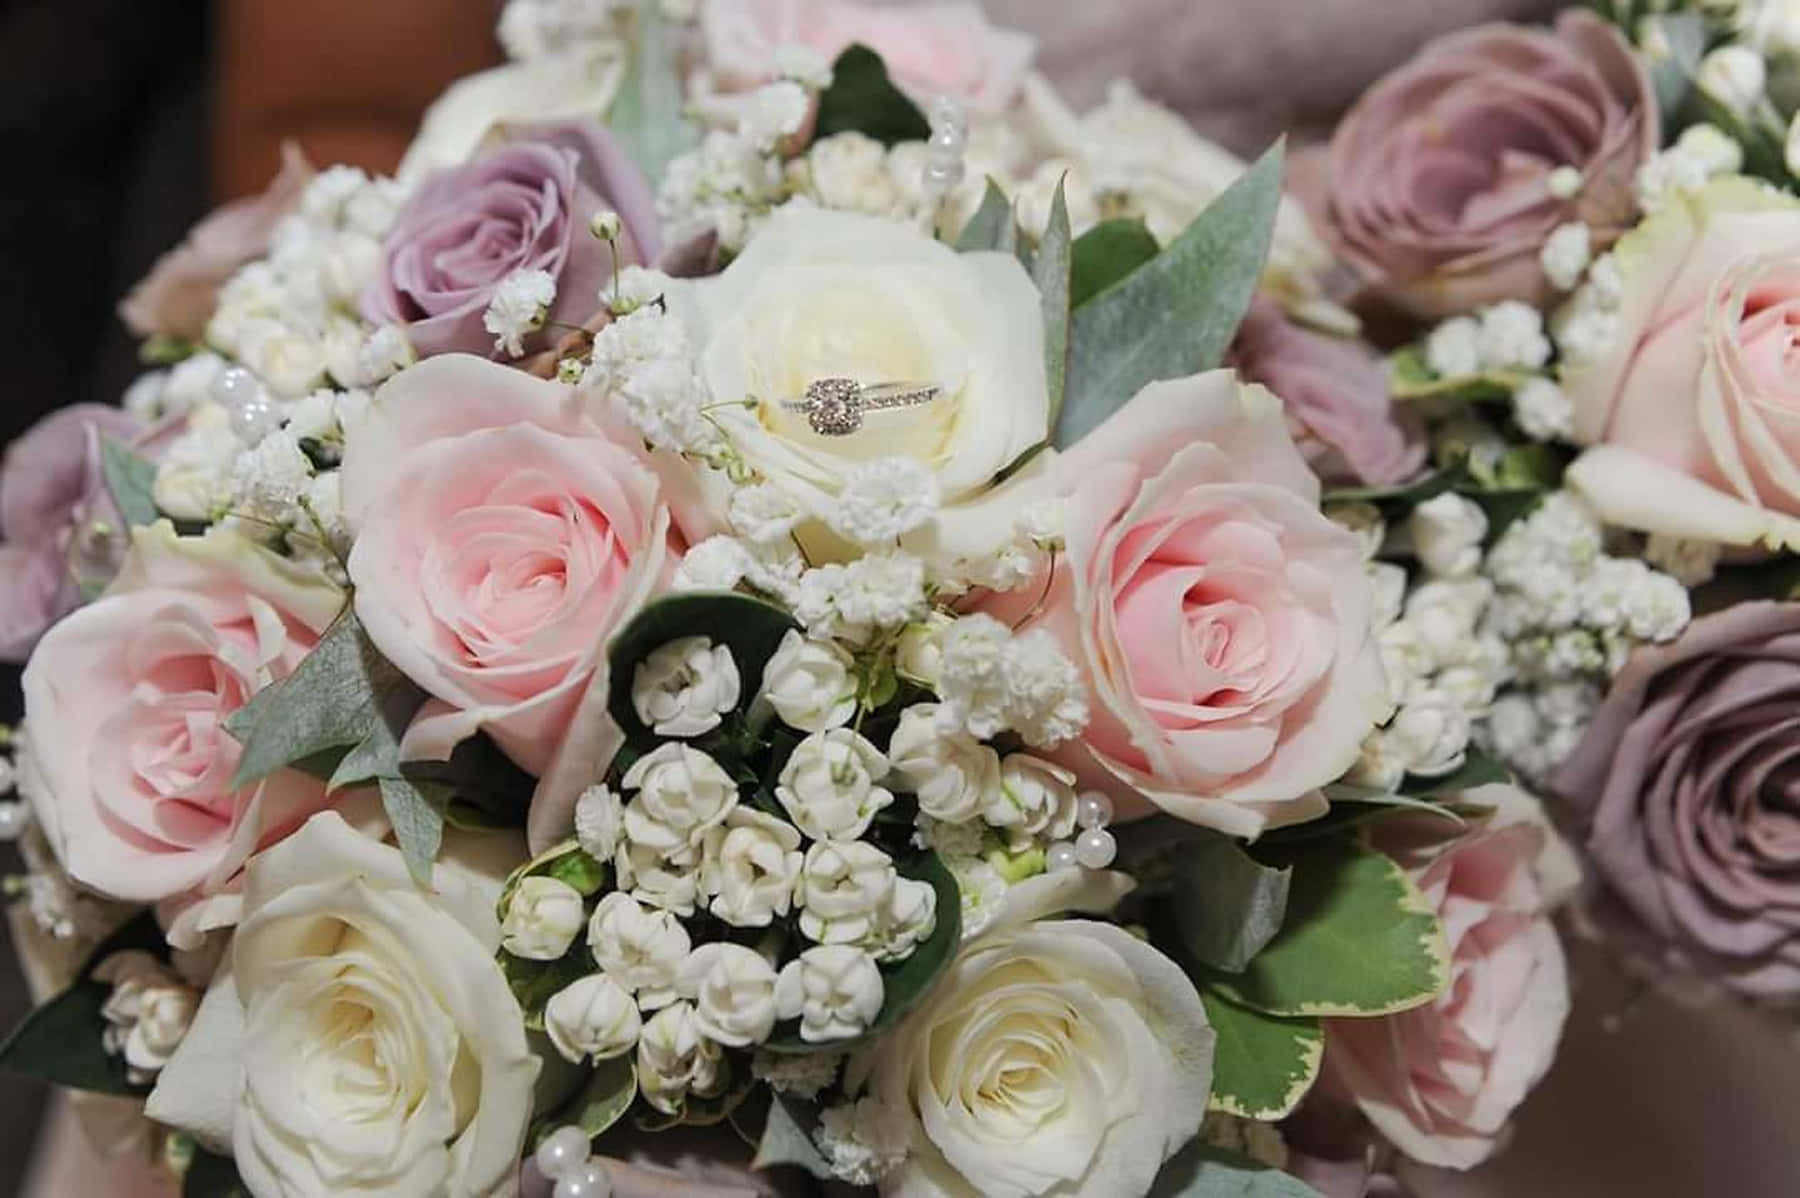 Caption: Elegant Wedding Bouquet in Bride's Hands Wallpaper